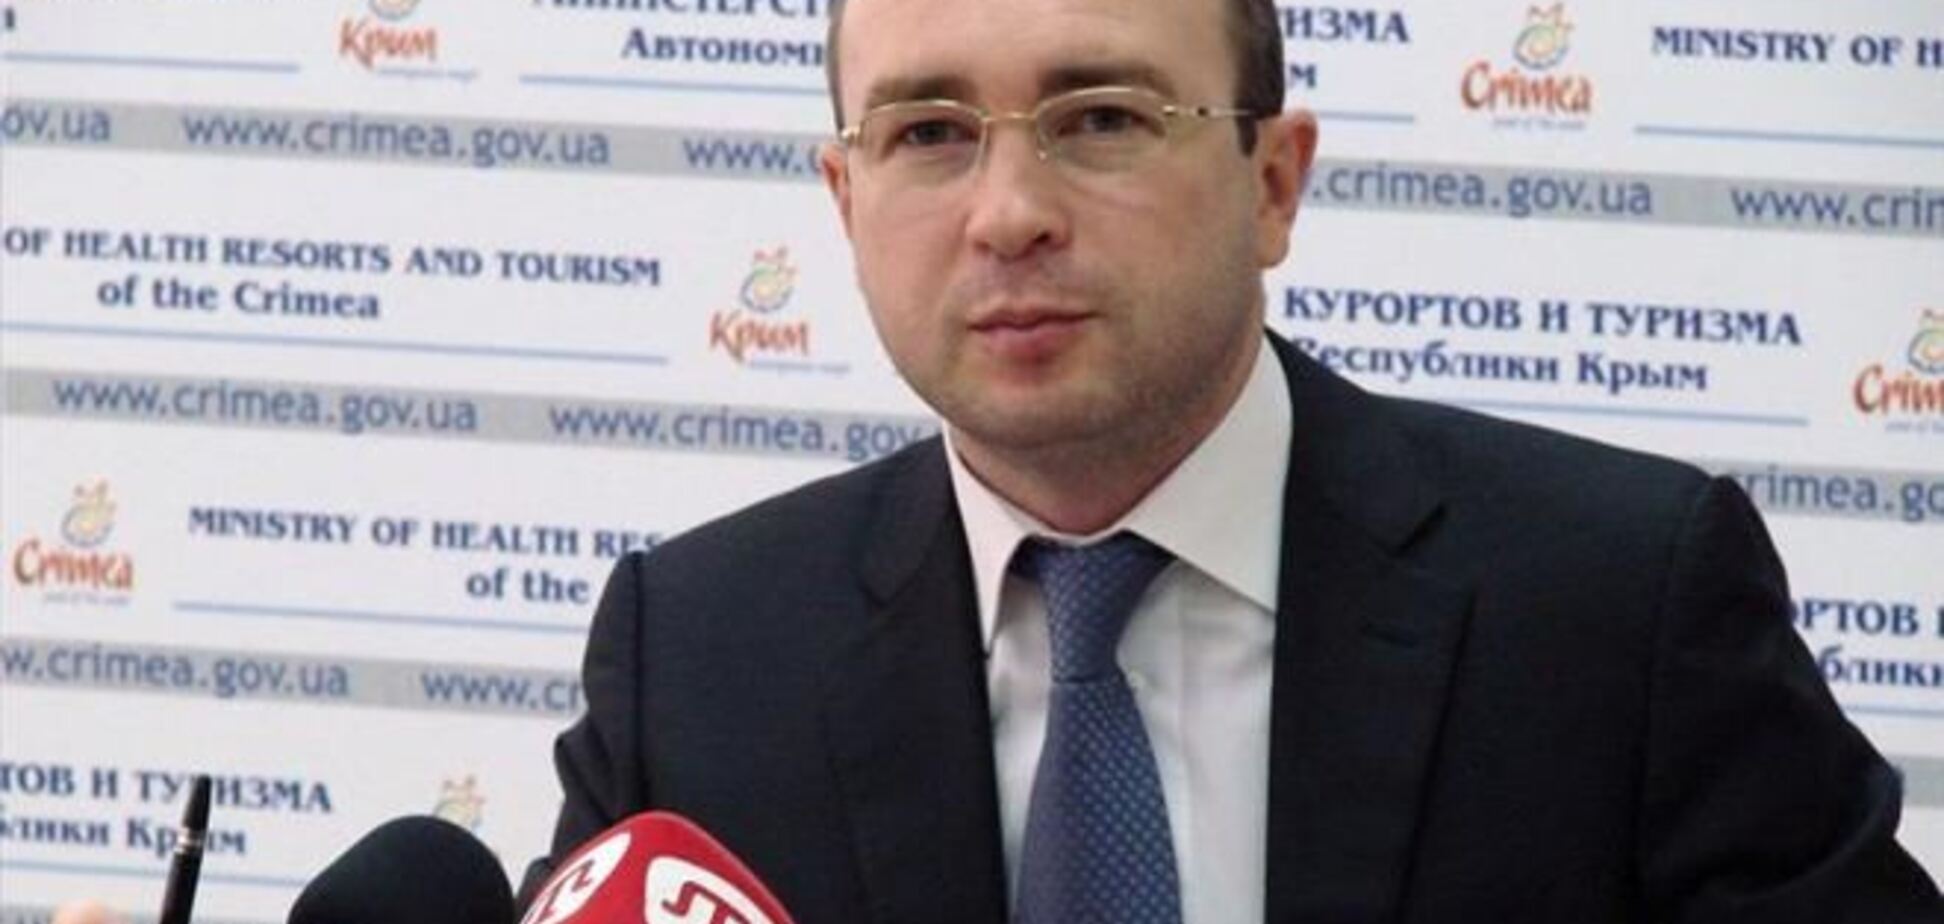 Экс-министр курортов и туризма АРК стал персоной нон грата в Крыму